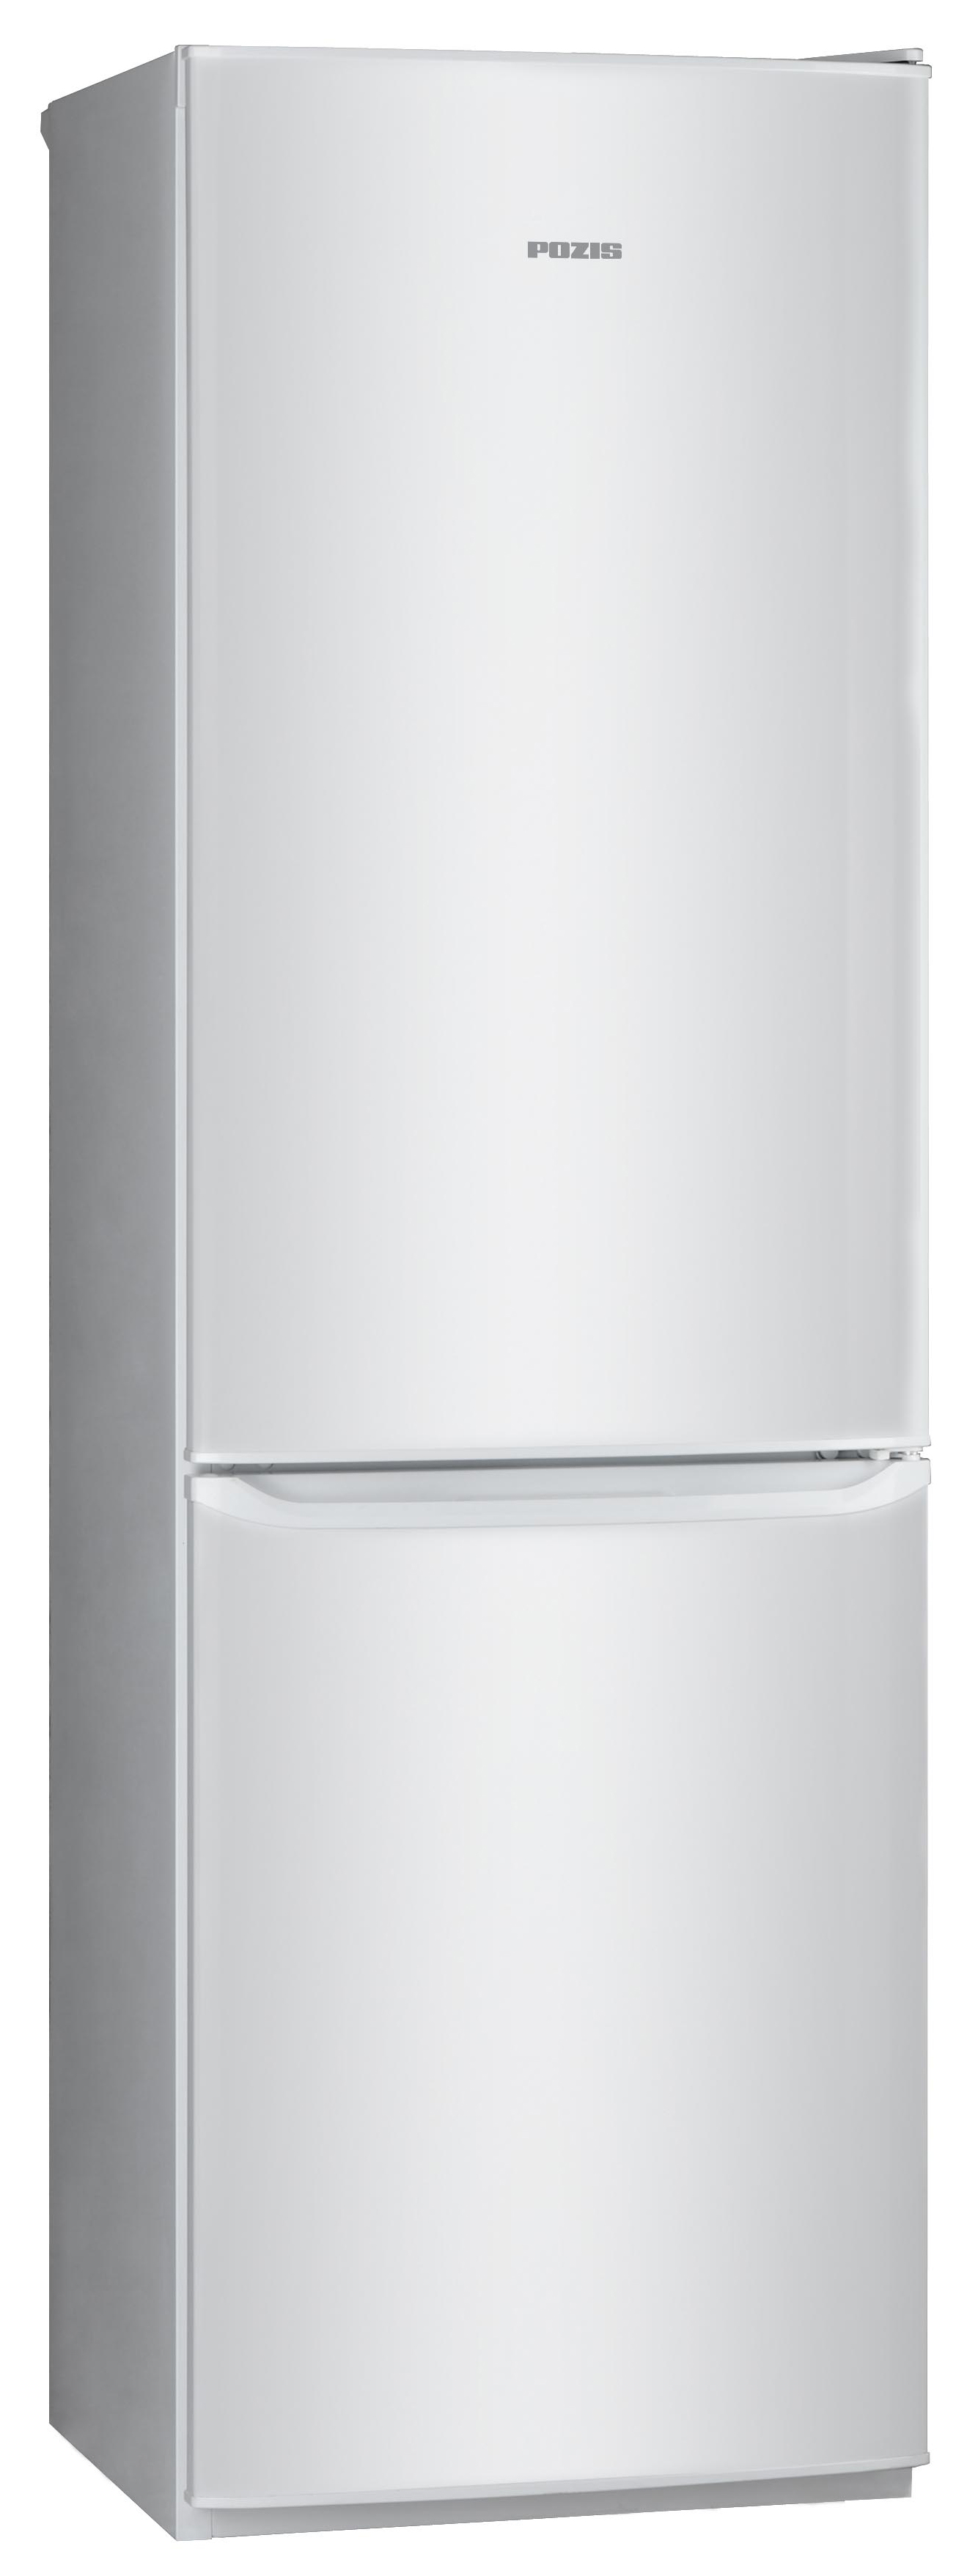 Холодильник POZIS RD-149 серебристый холодильник pozis rk 103